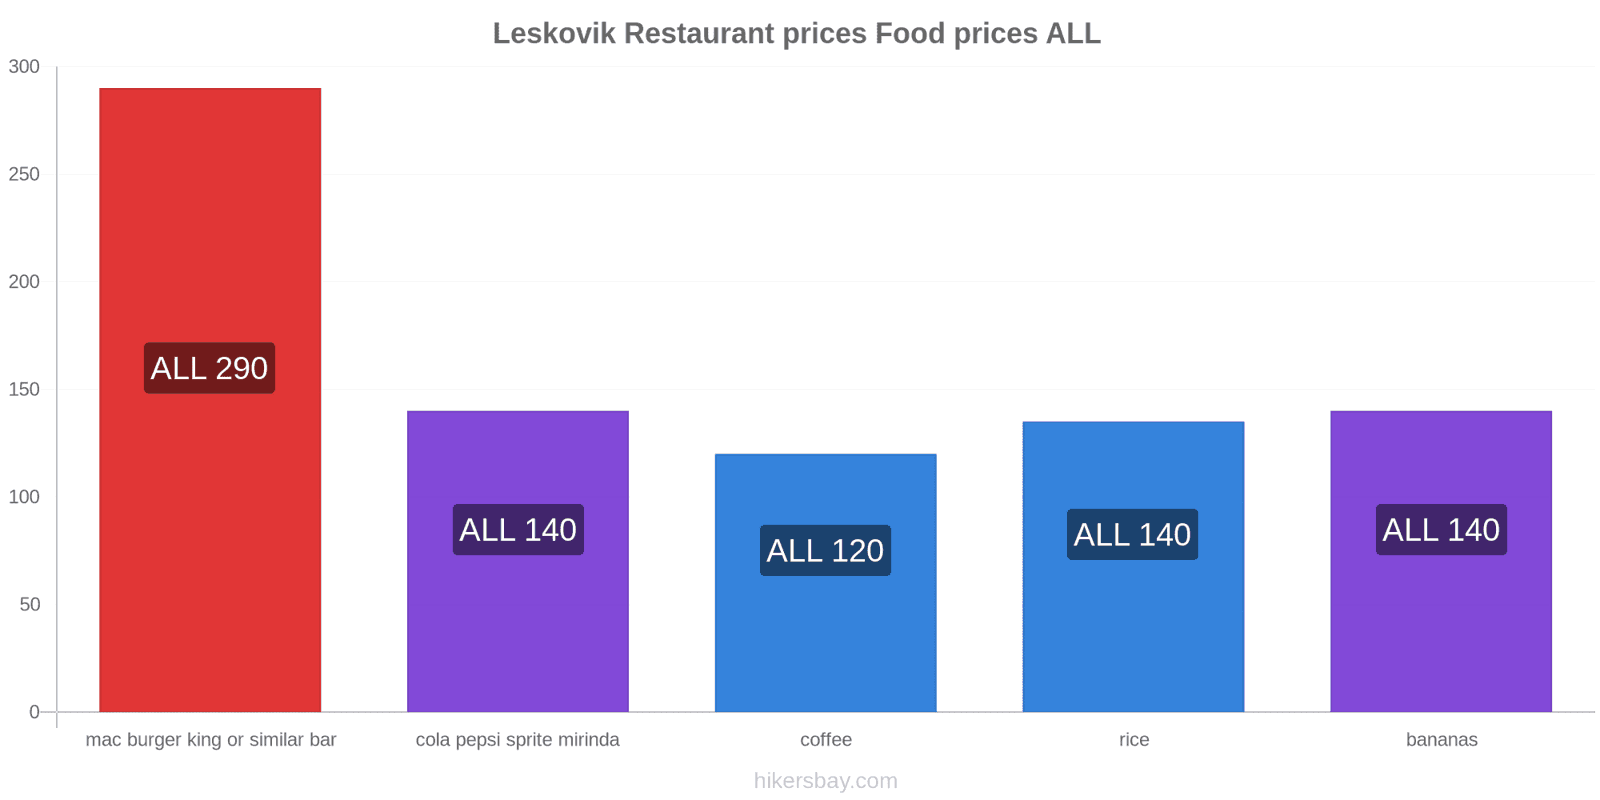 Leskovik price changes hikersbay.com